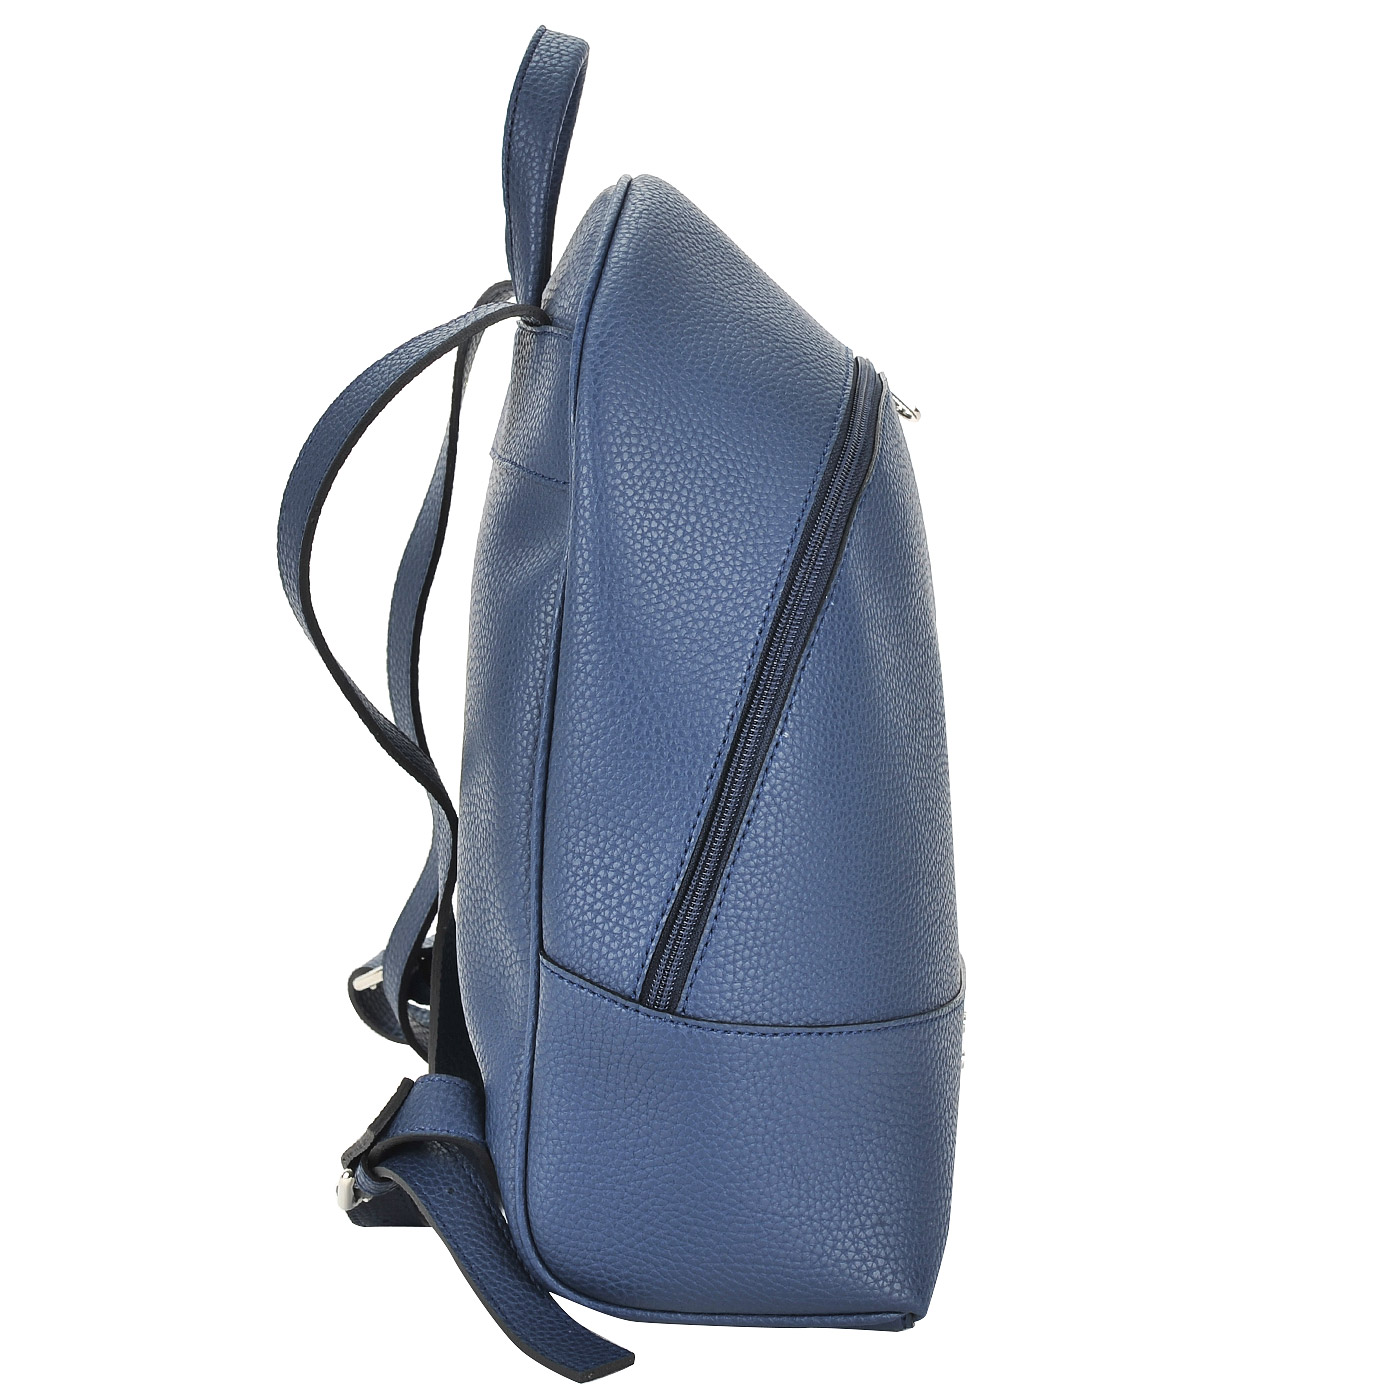 Синий рюкзак с узкими лямками Chatte 